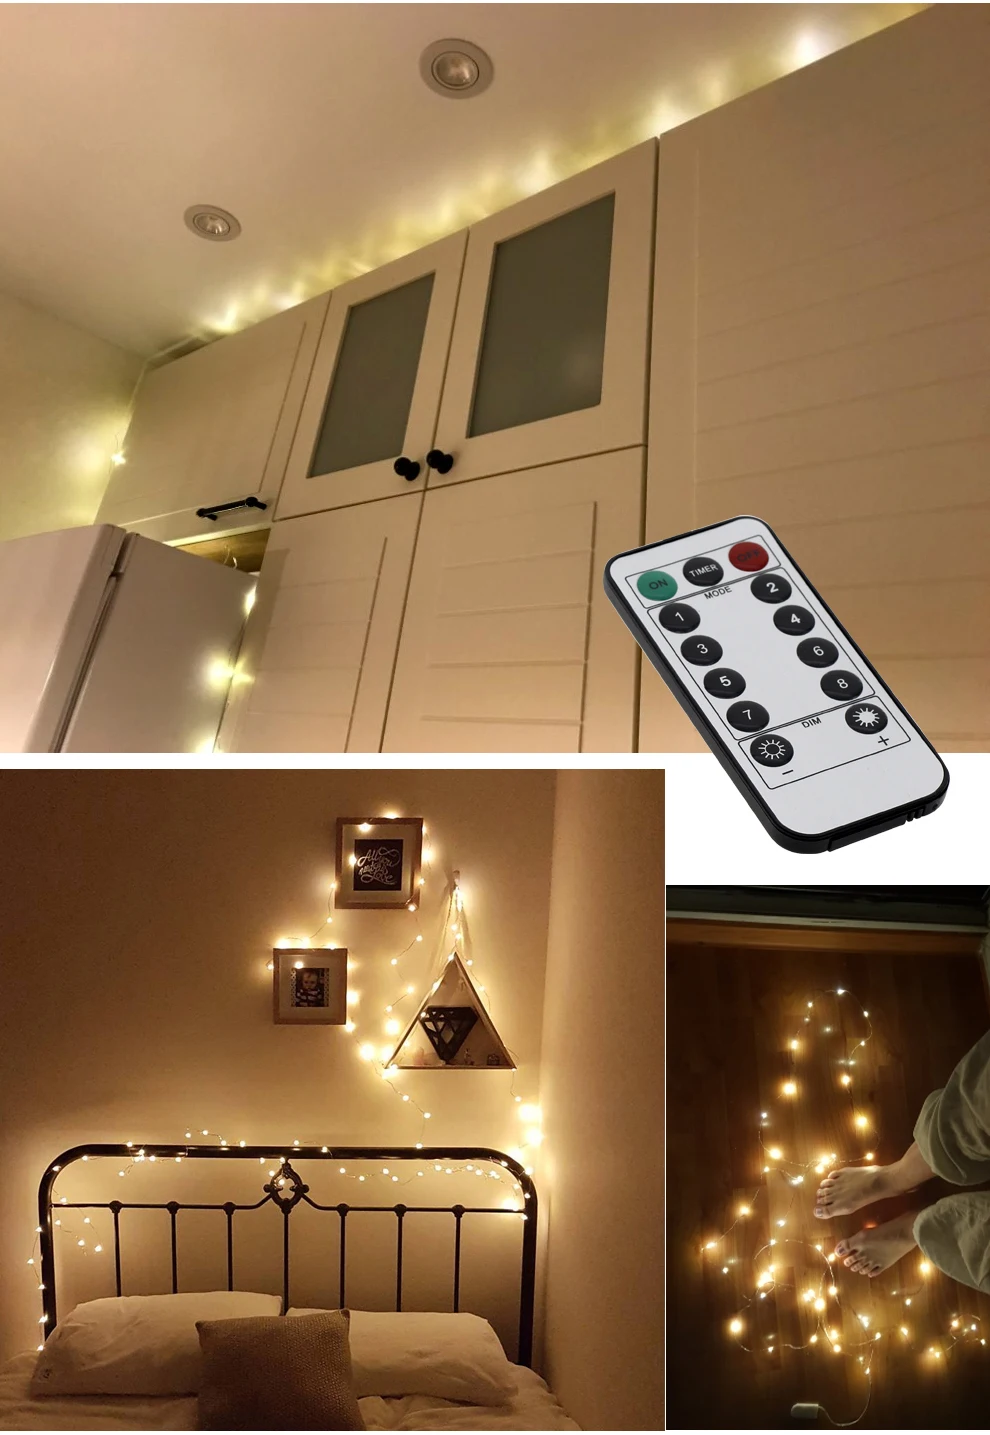 USB СВЕТОДИОДНЫЙ светильник-гирлянда s, цветная Новогодняя гирлянда, медная проволока, сказочный светильник для внутреннего, наружного, свадебного, Рождественского украшения